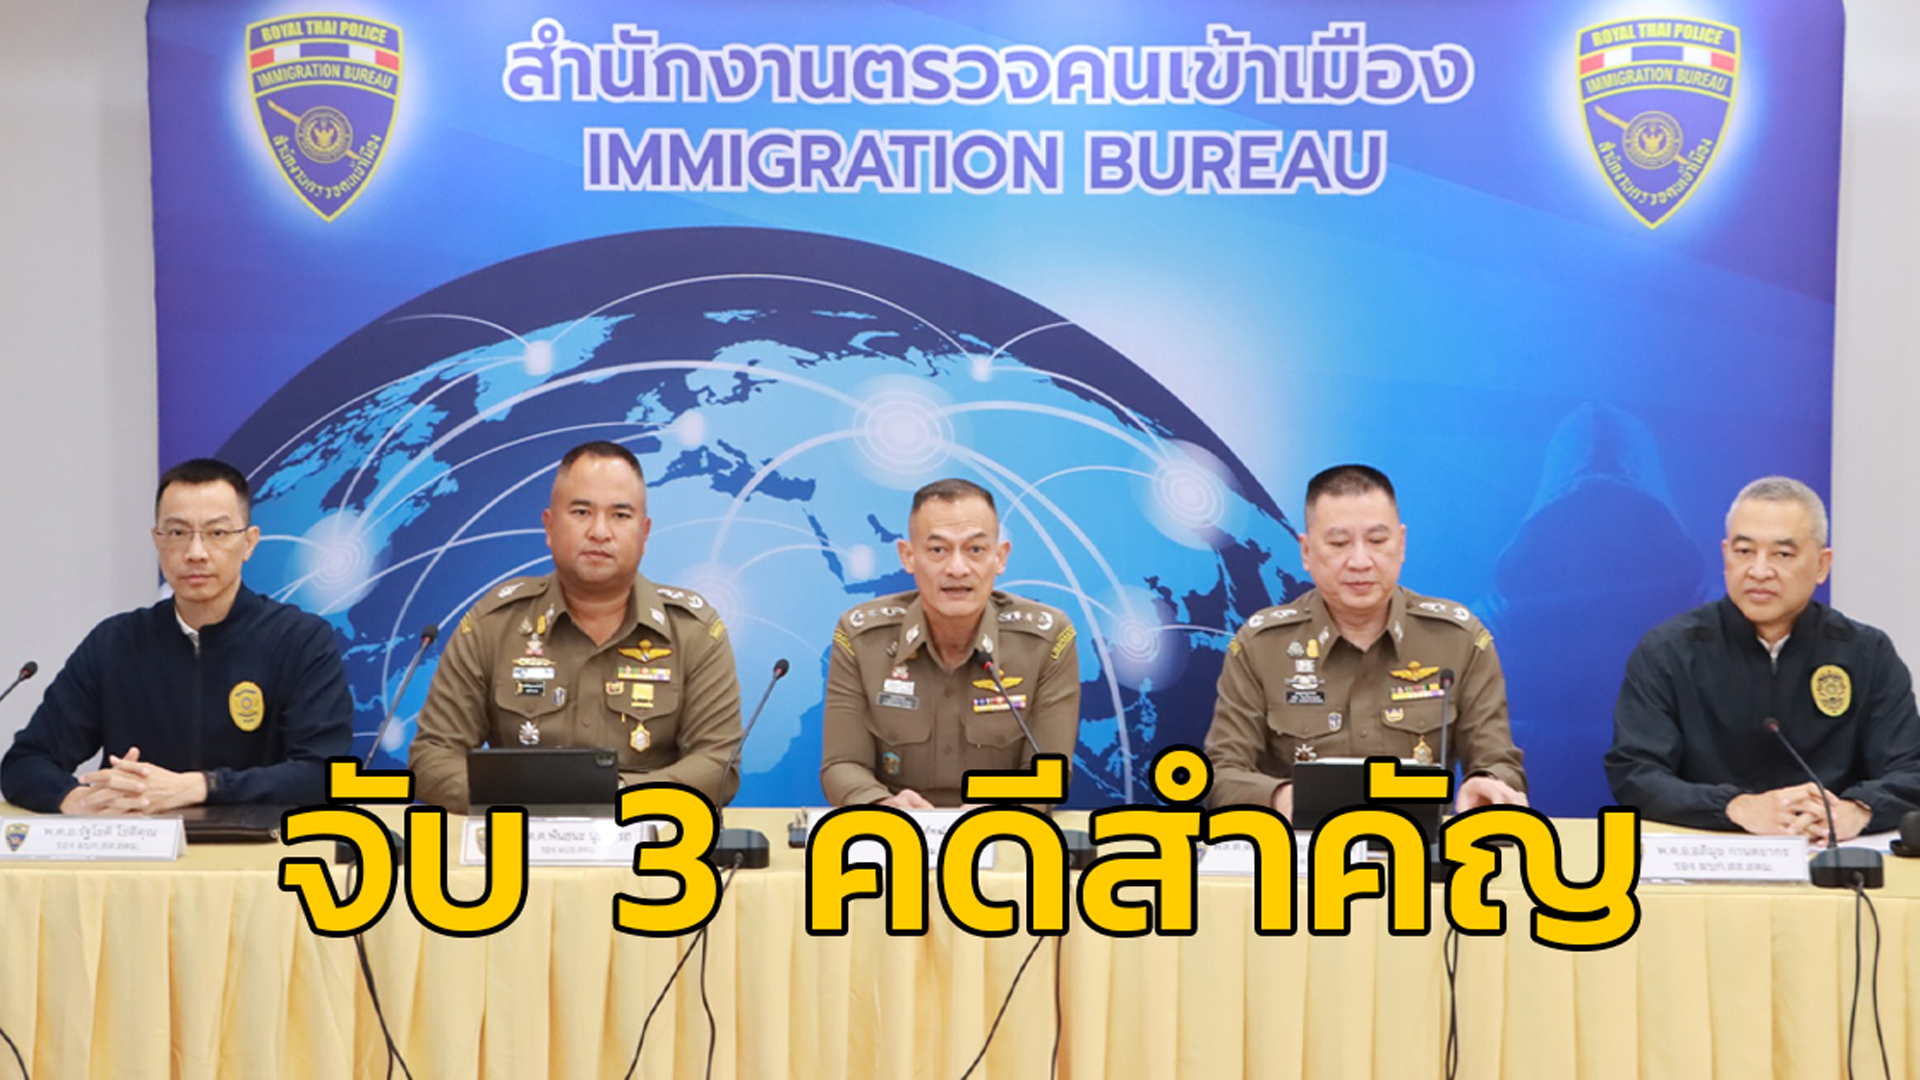 สตม.แถลงจับชาวต่างชาติ 3 คดี ก่อเหตุหลบหนีกบดานไทย